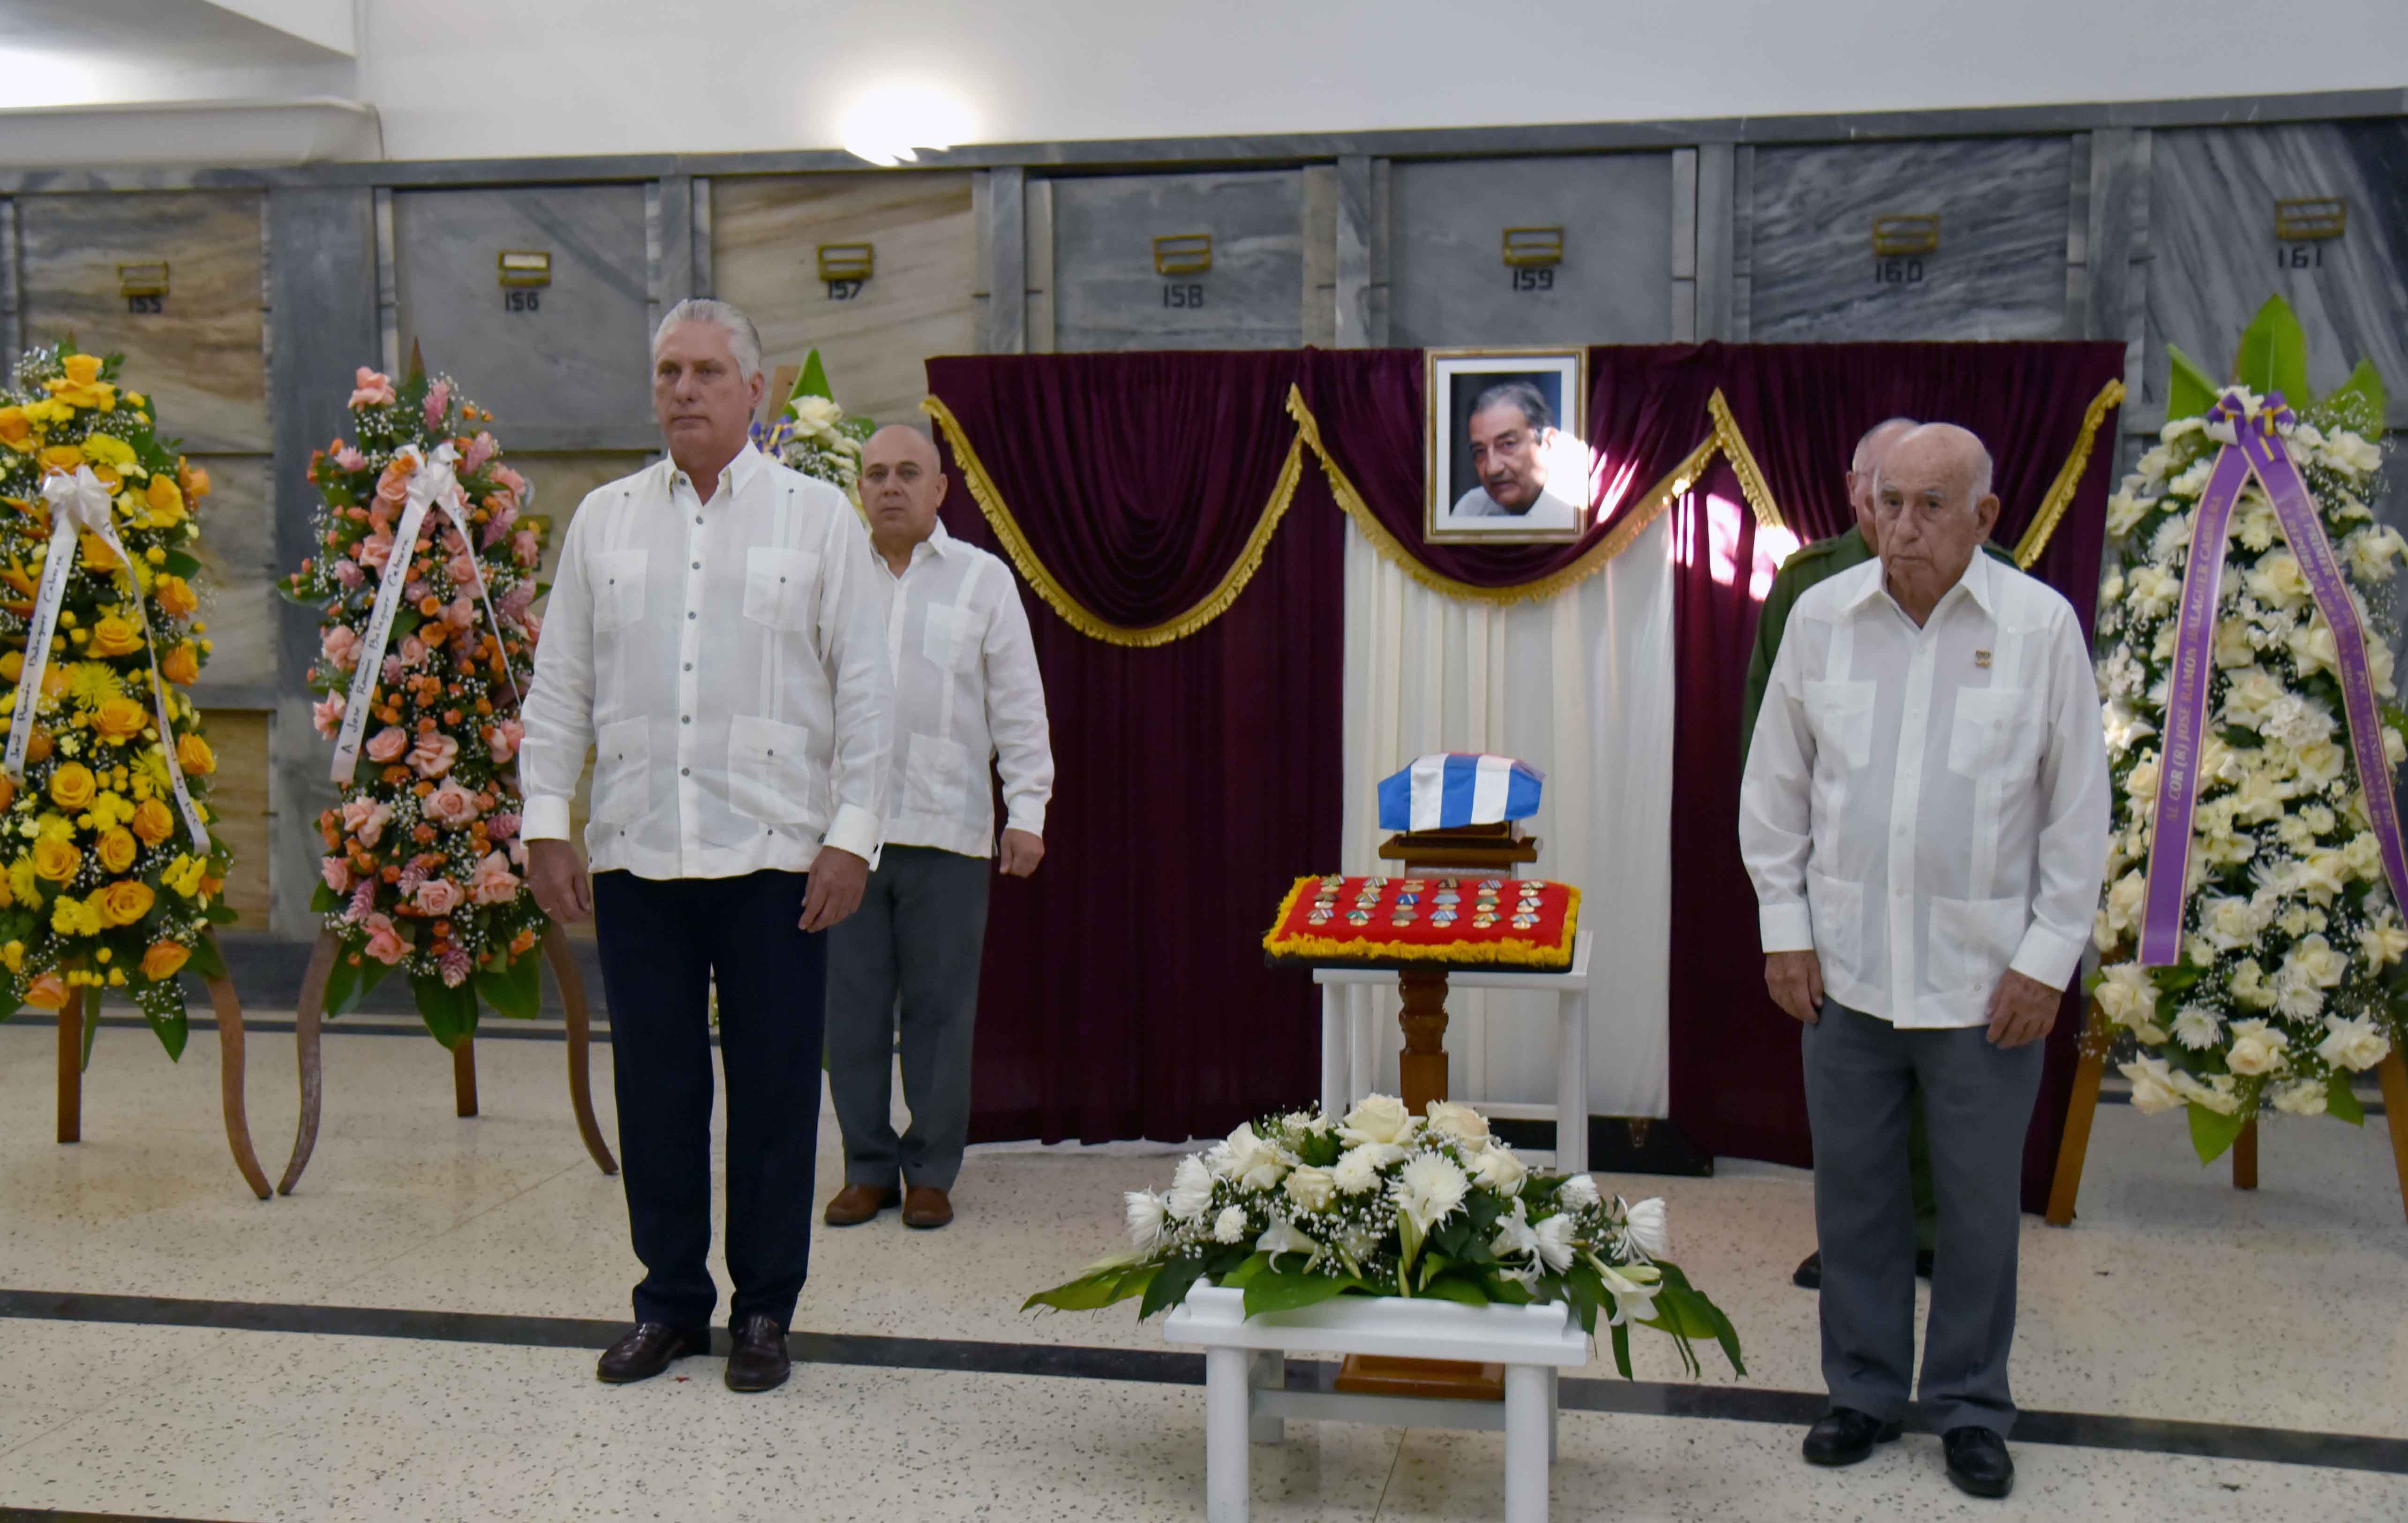 El Presidente cubano junto a otras autoridades encabezó la primera guardia de honor